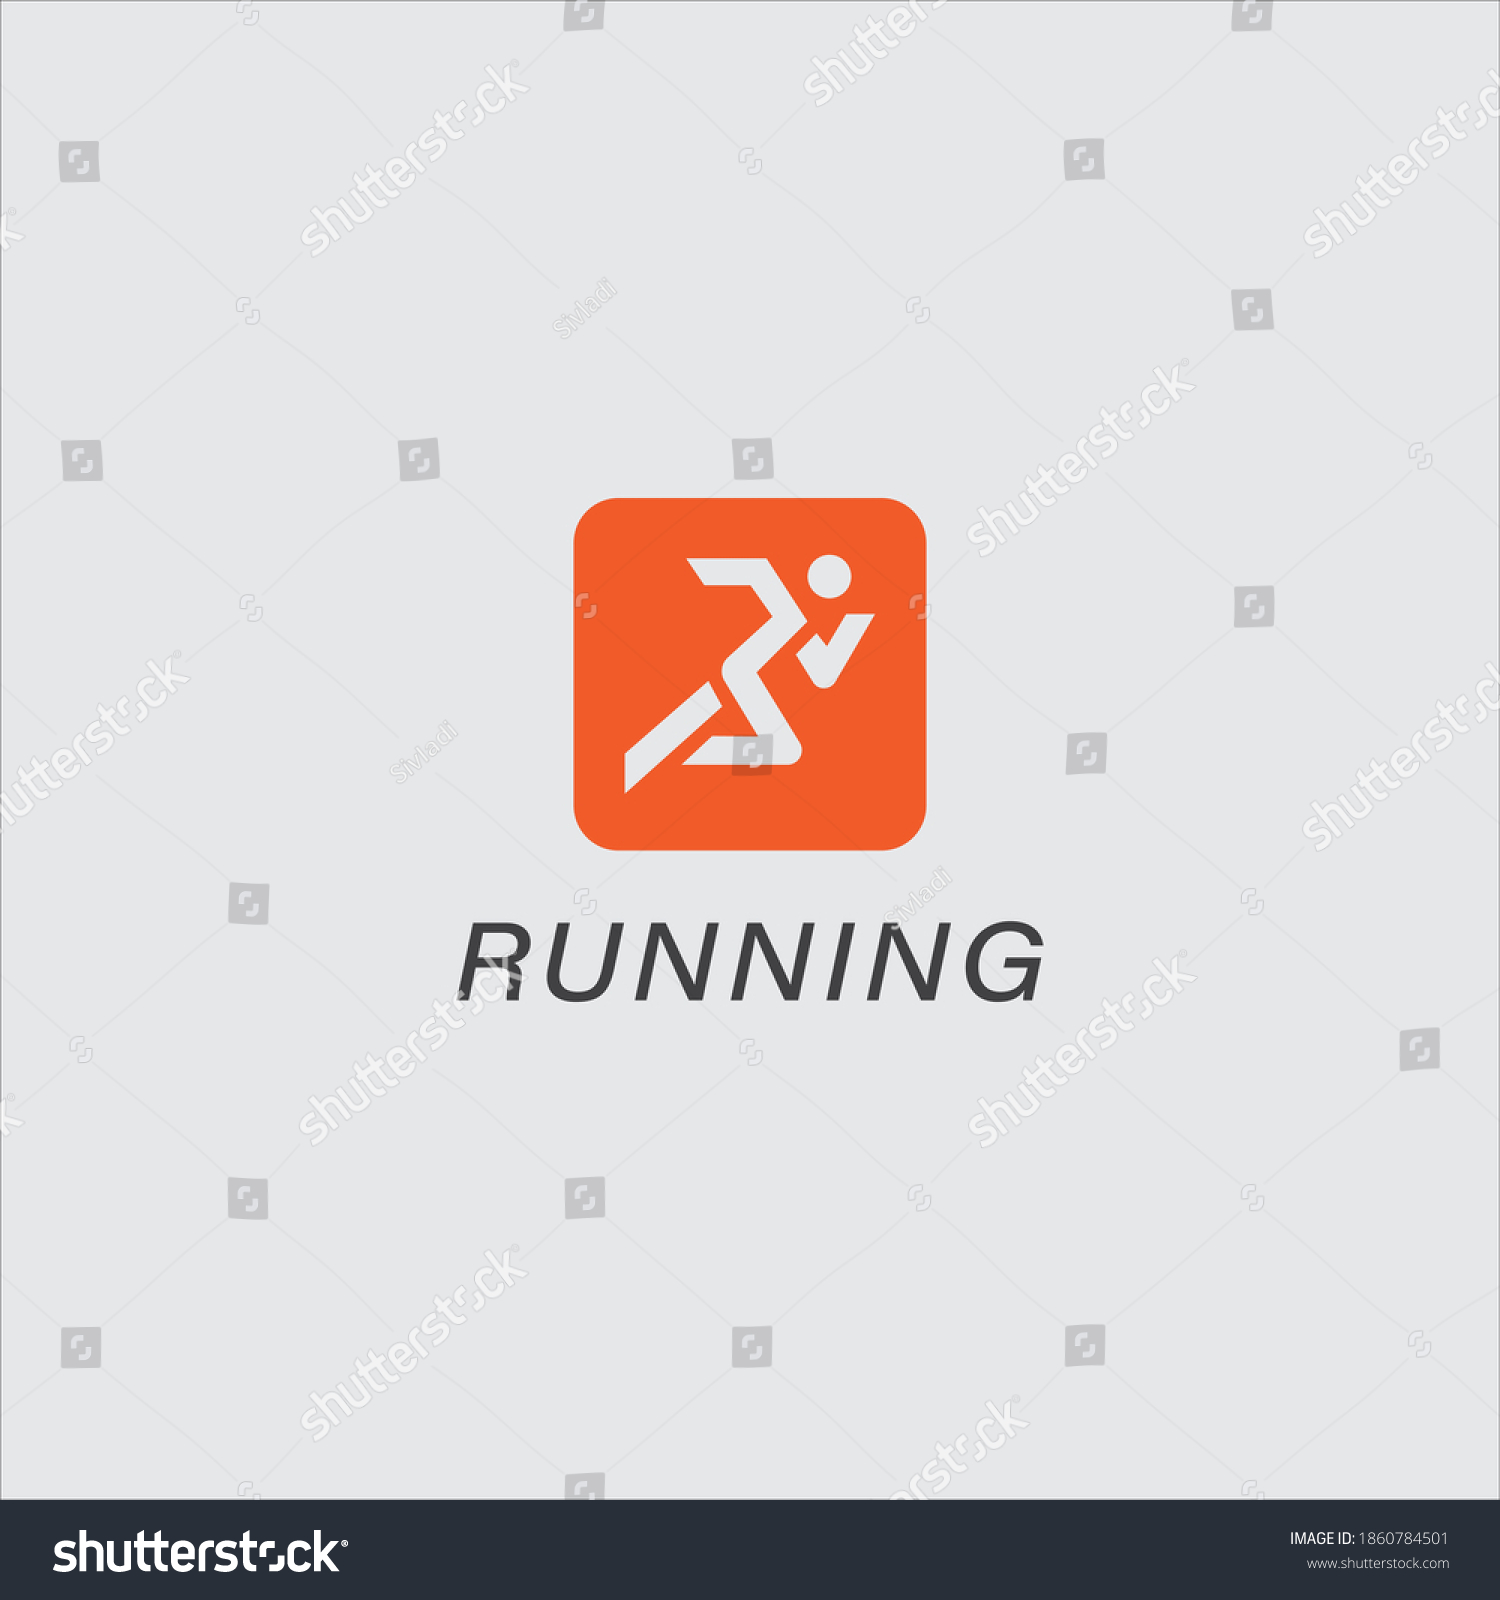 Running Logo Design Vector Illustration Stock Vector (Royalty Free ...